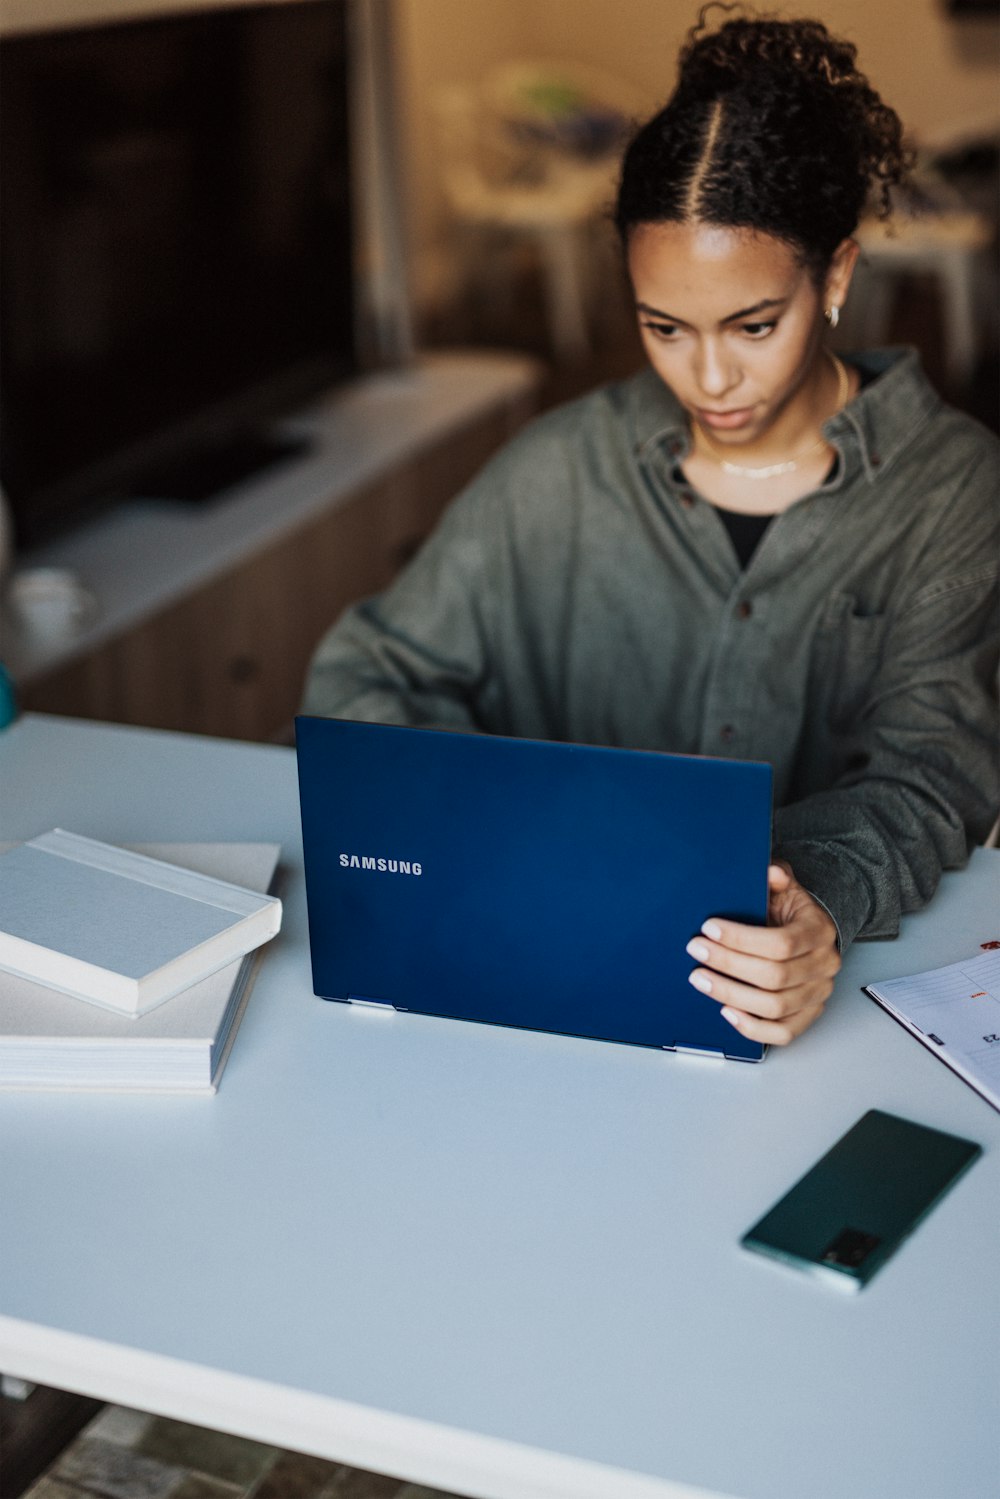 Femme en veste grise tenant un ordinateur portable bleu